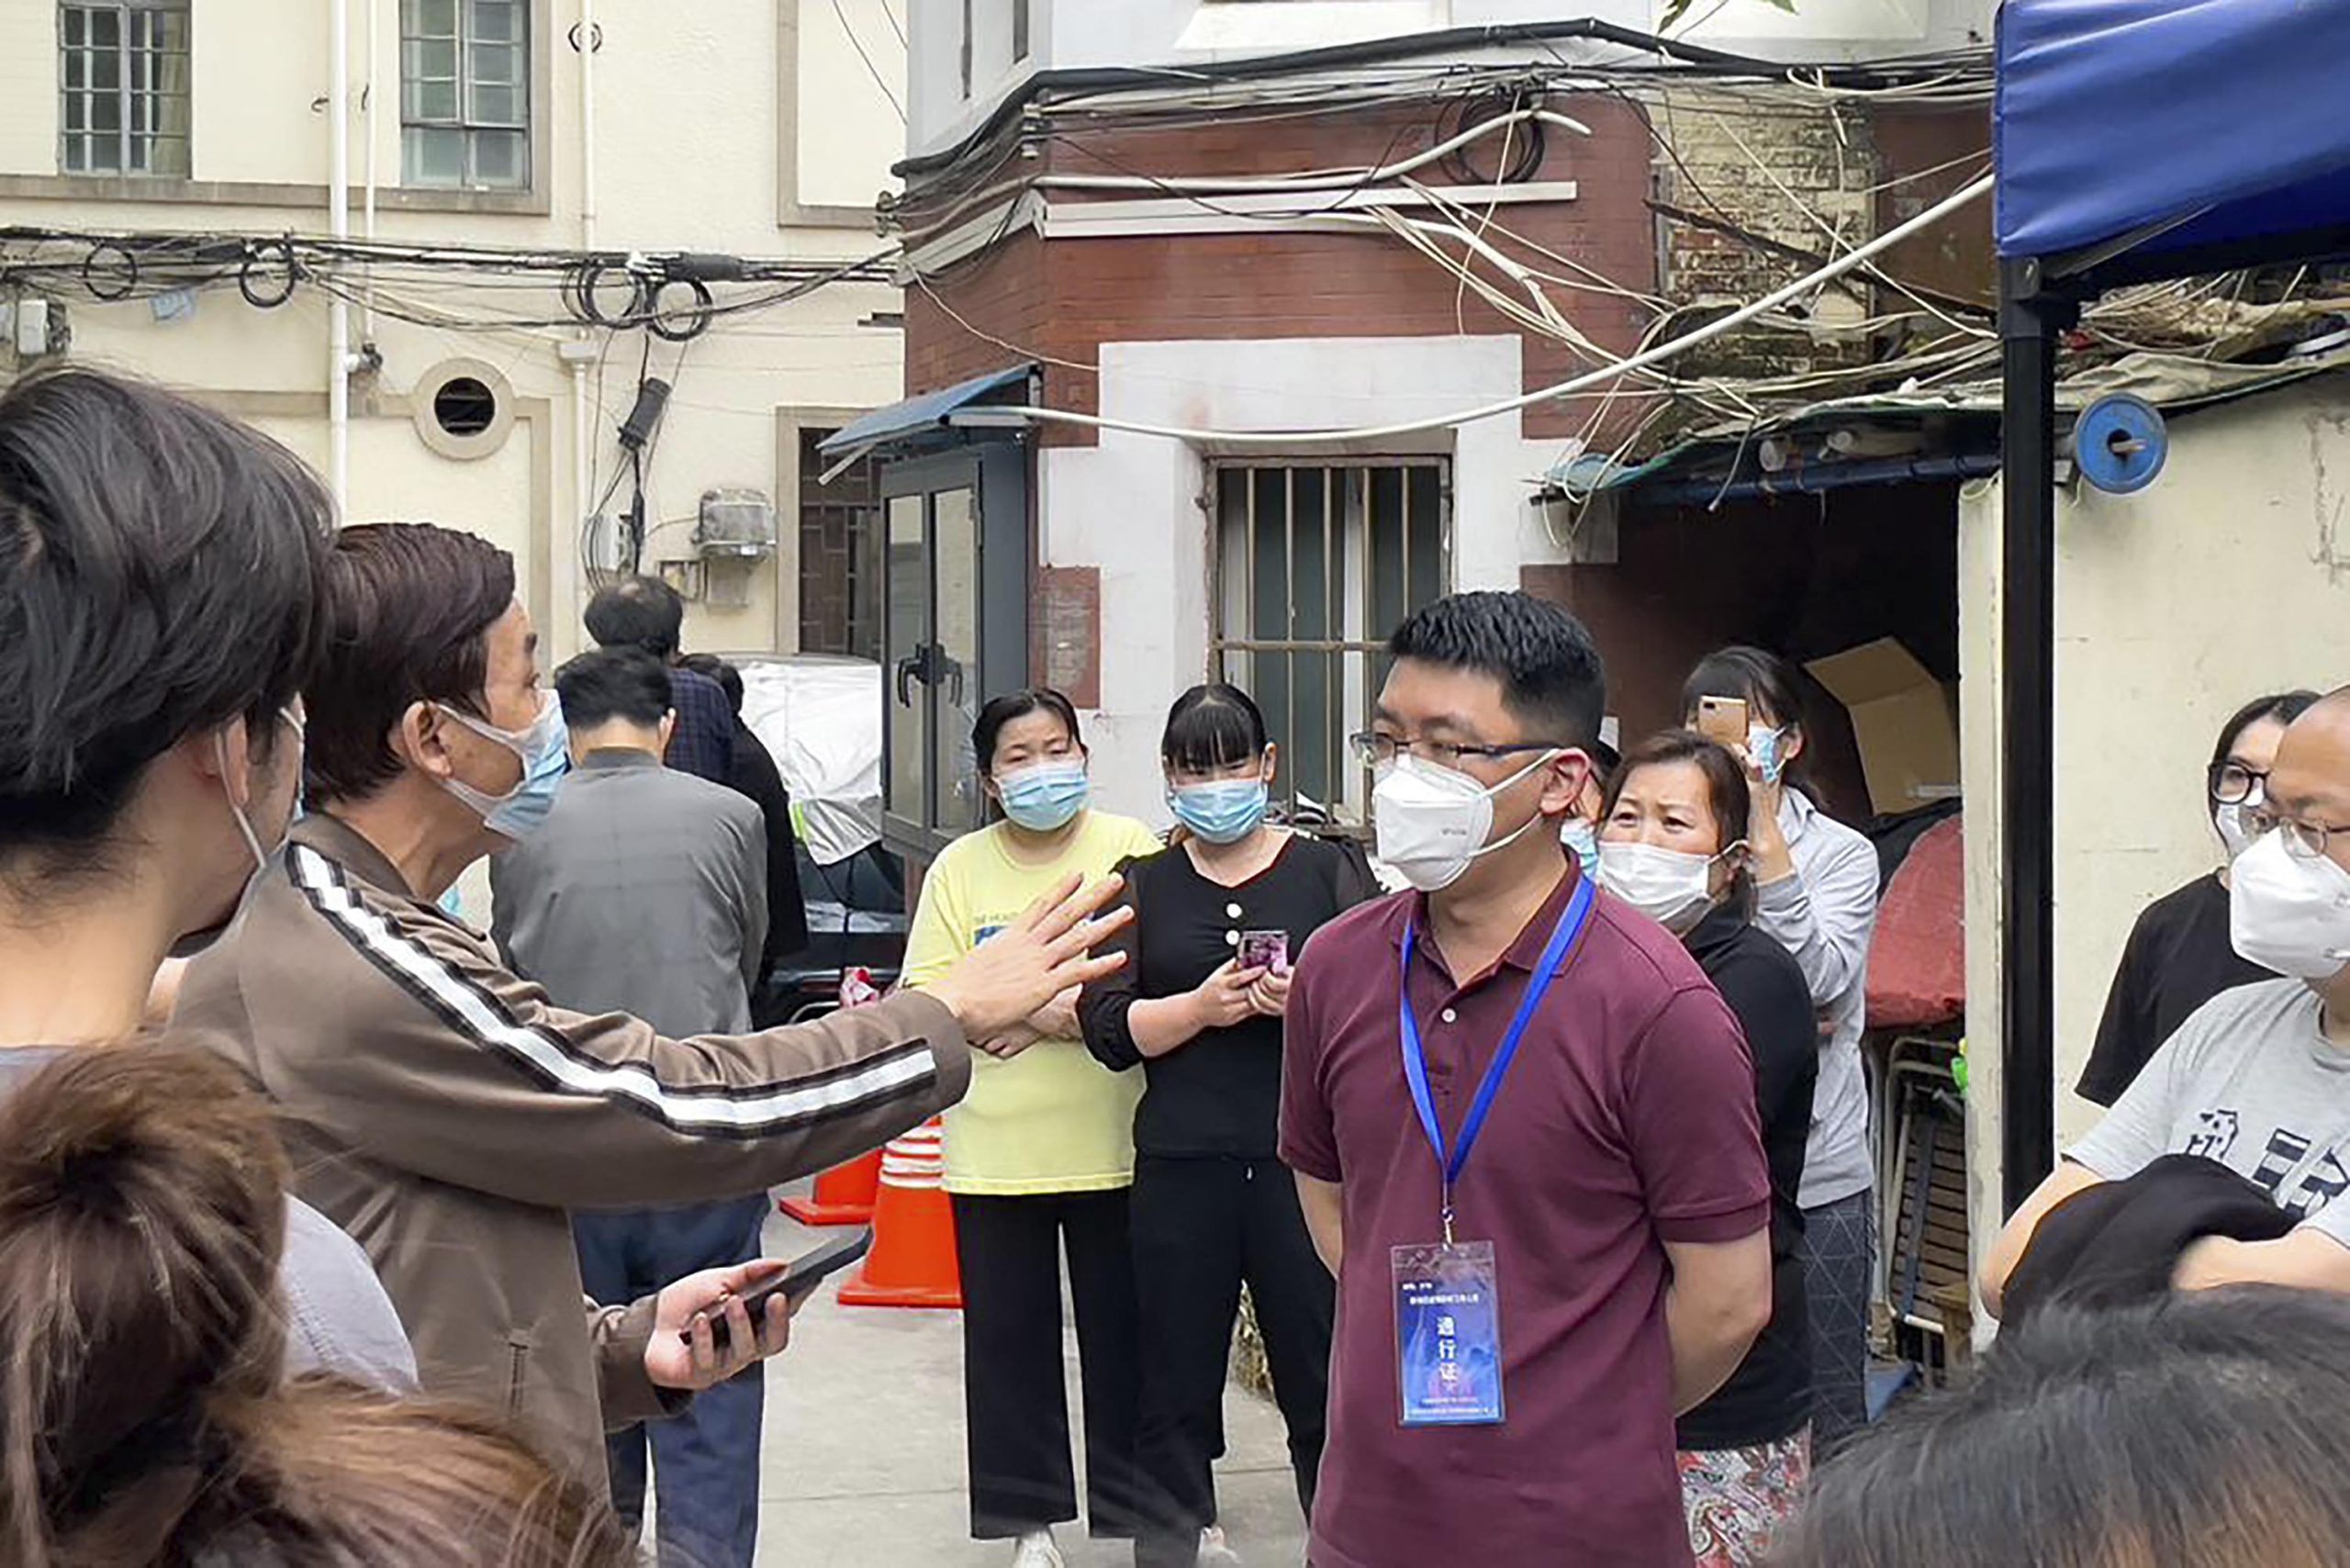 Cierre de Shanghái: los residentes exigen la liberación, algunos la obtienen